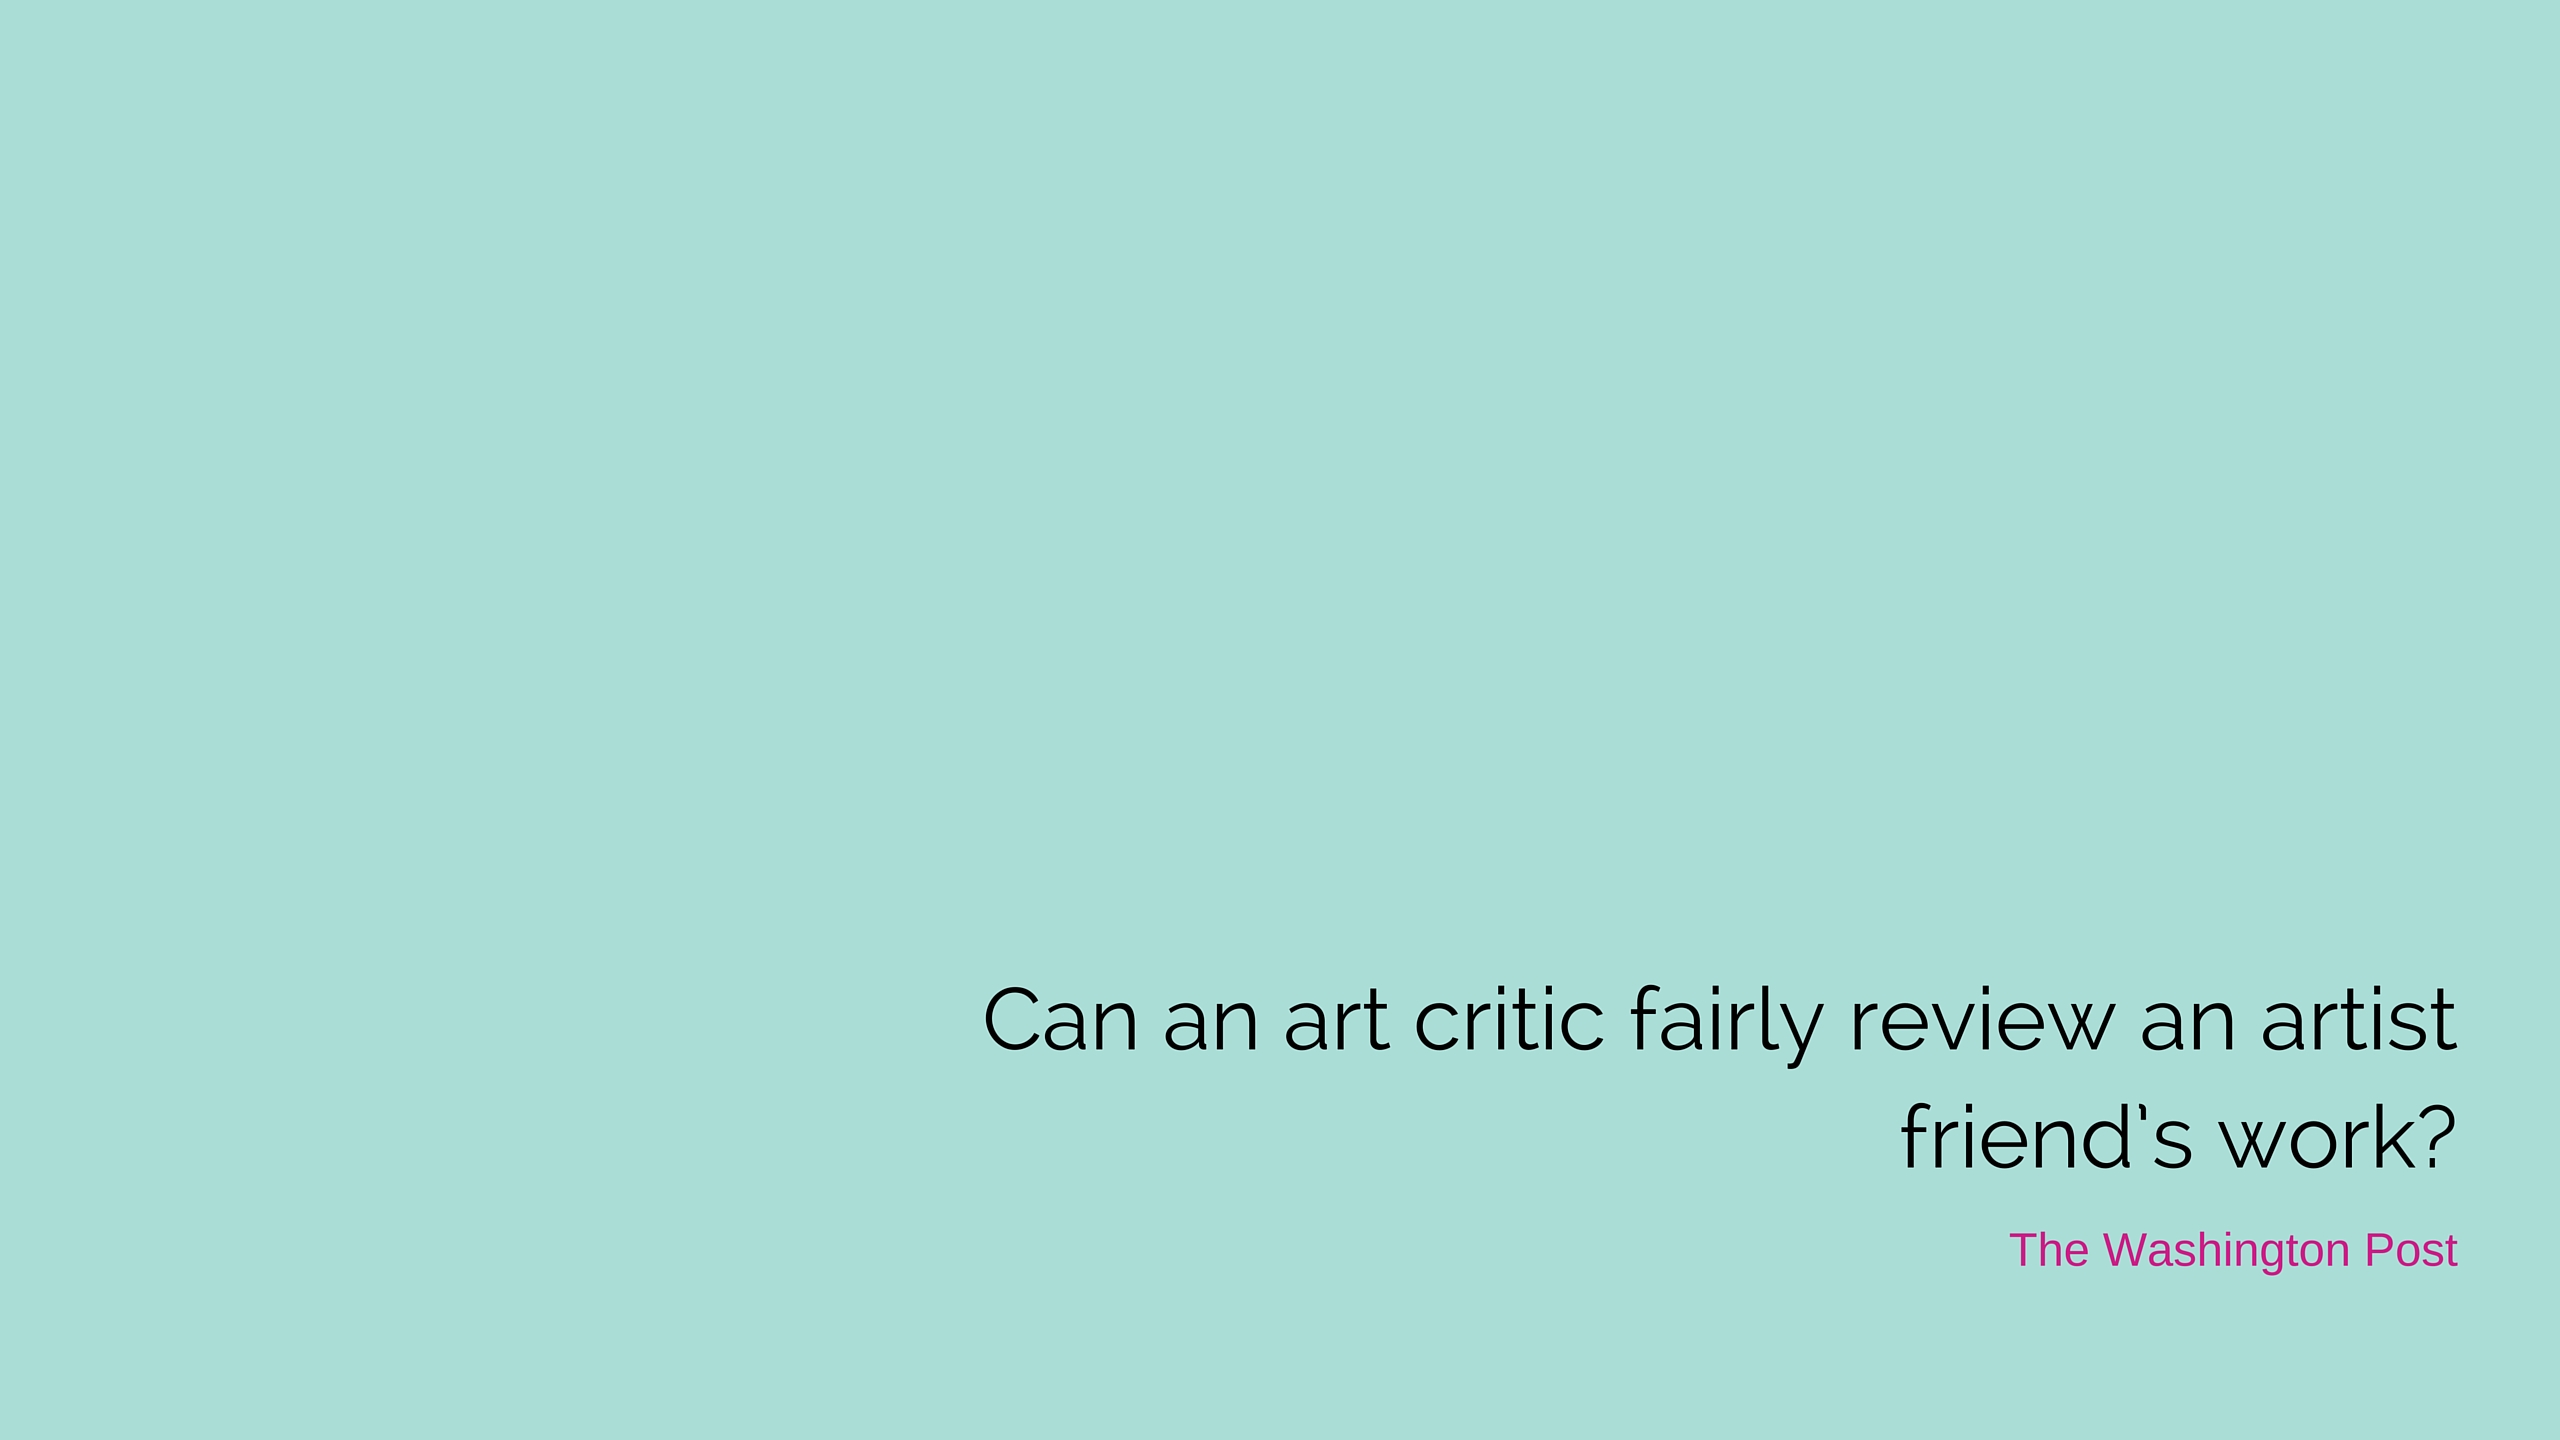 Can an art critic fairly review an artist friend’s work?